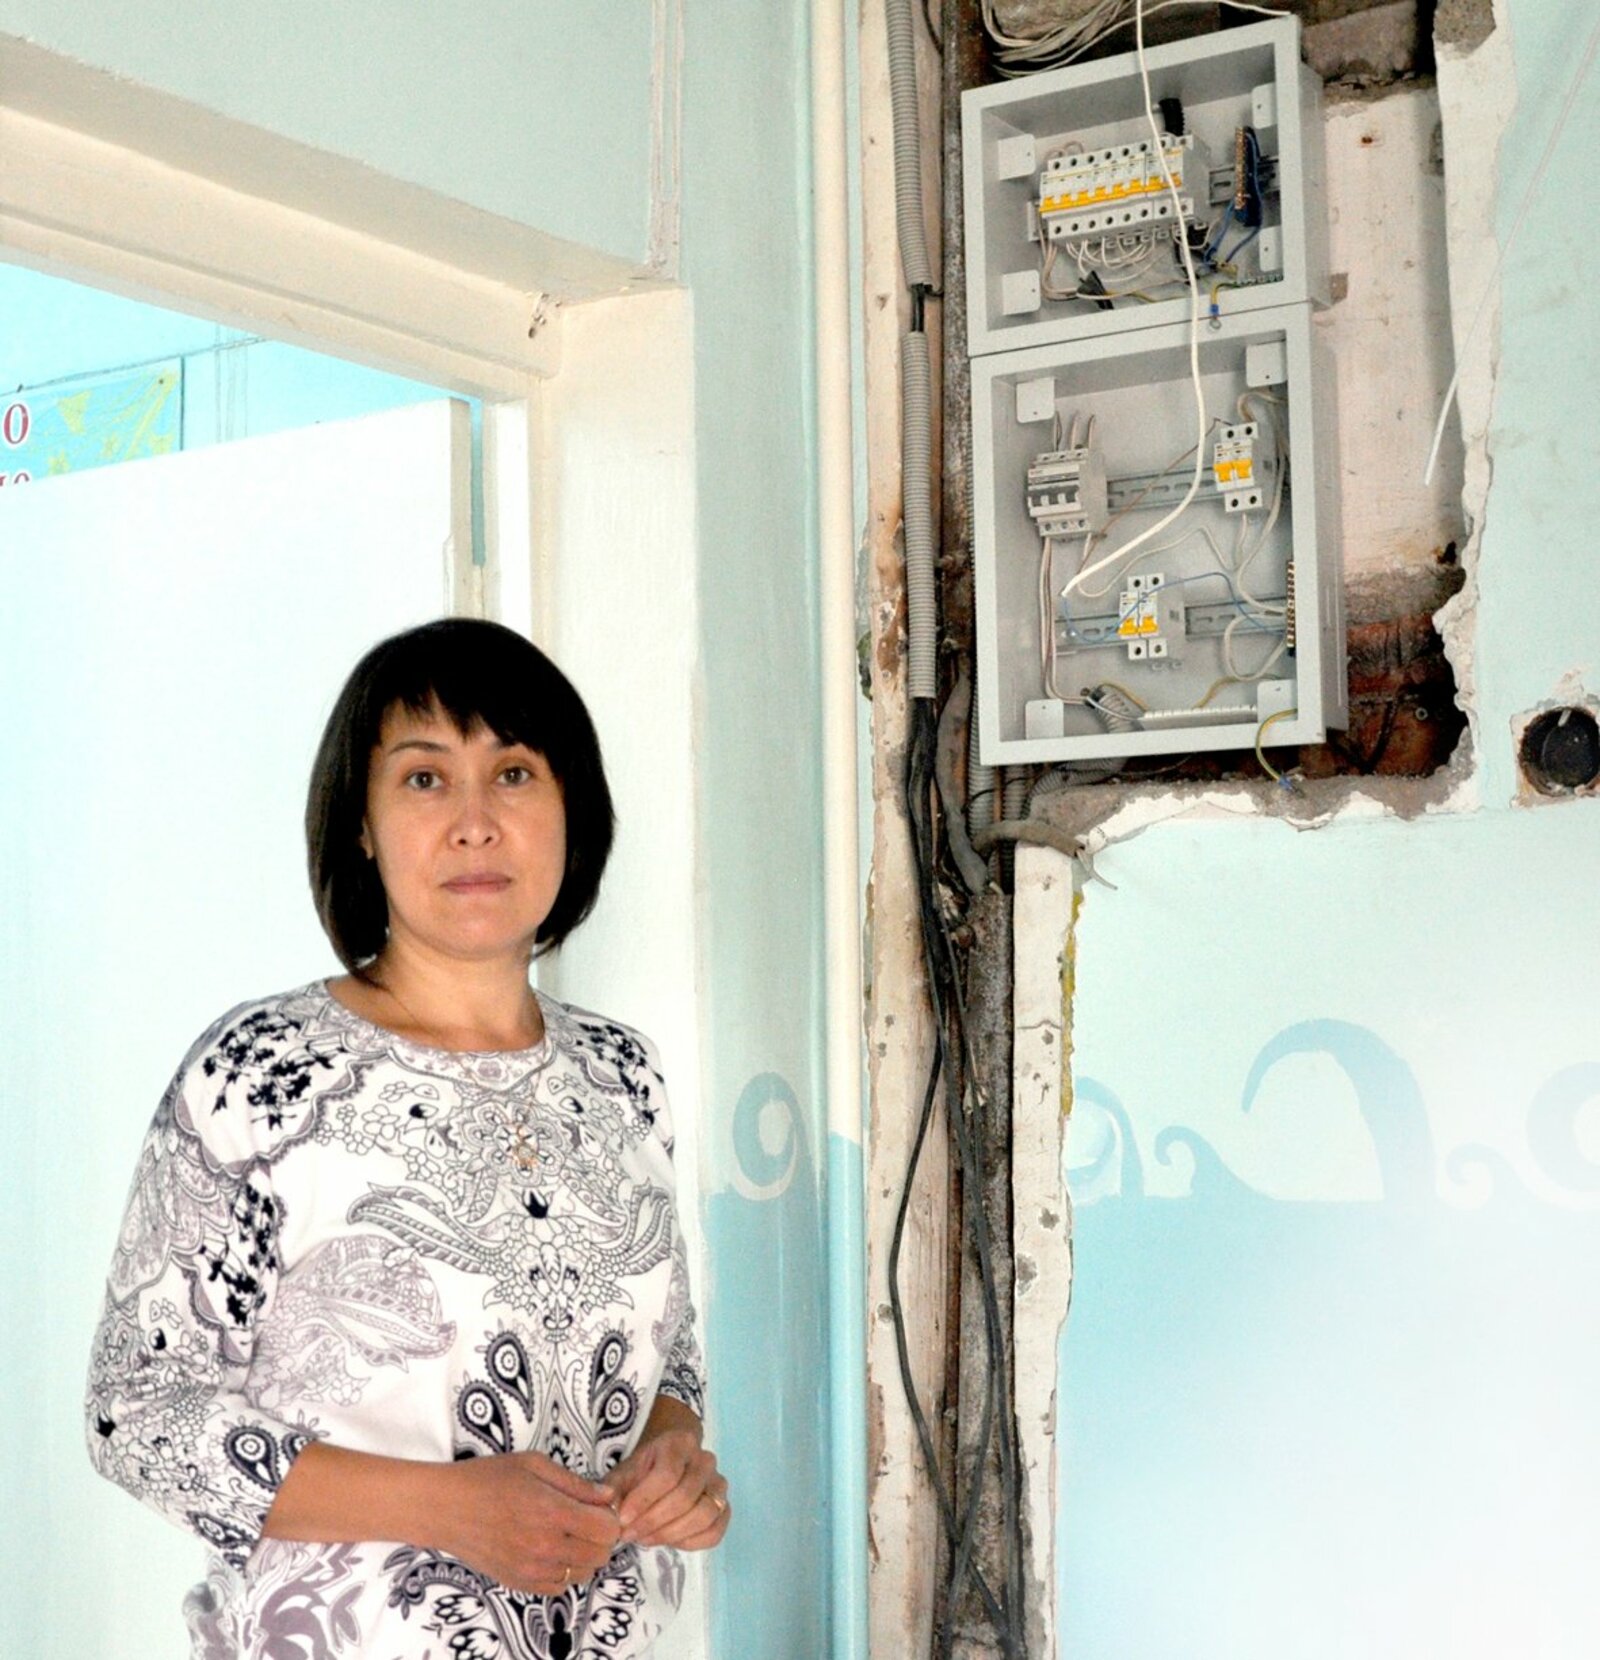 Задующий детсадом «Айгуль» Эльвира Бердигулова  и инициативная группа родителей контролируют ход ремонта внутренних сетей электроснабжения.